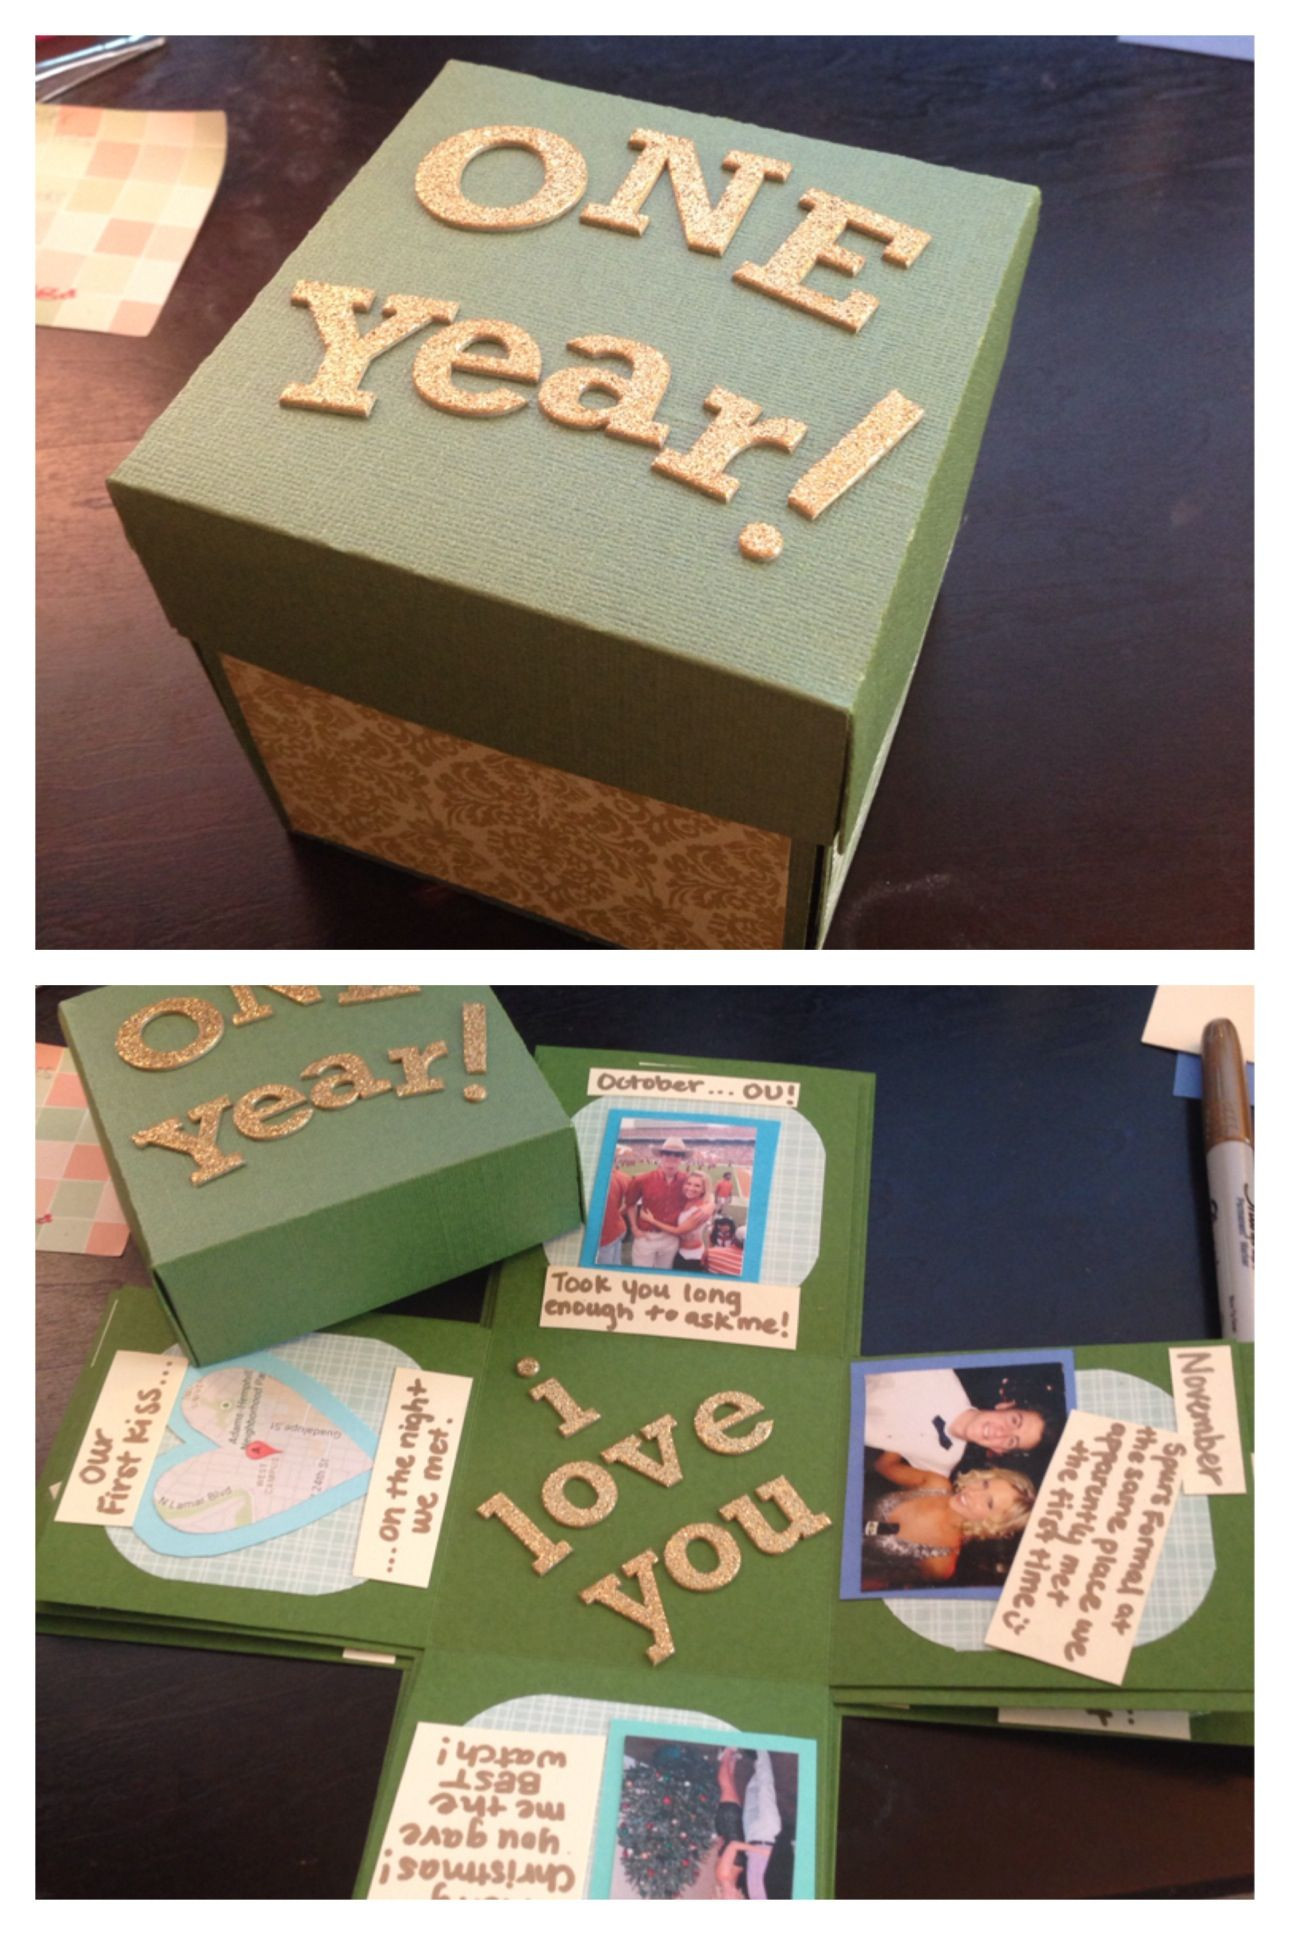 One Year Gift Ideas For Boyfriend
 Boyfriend Anniversary Gifts on Pinterest